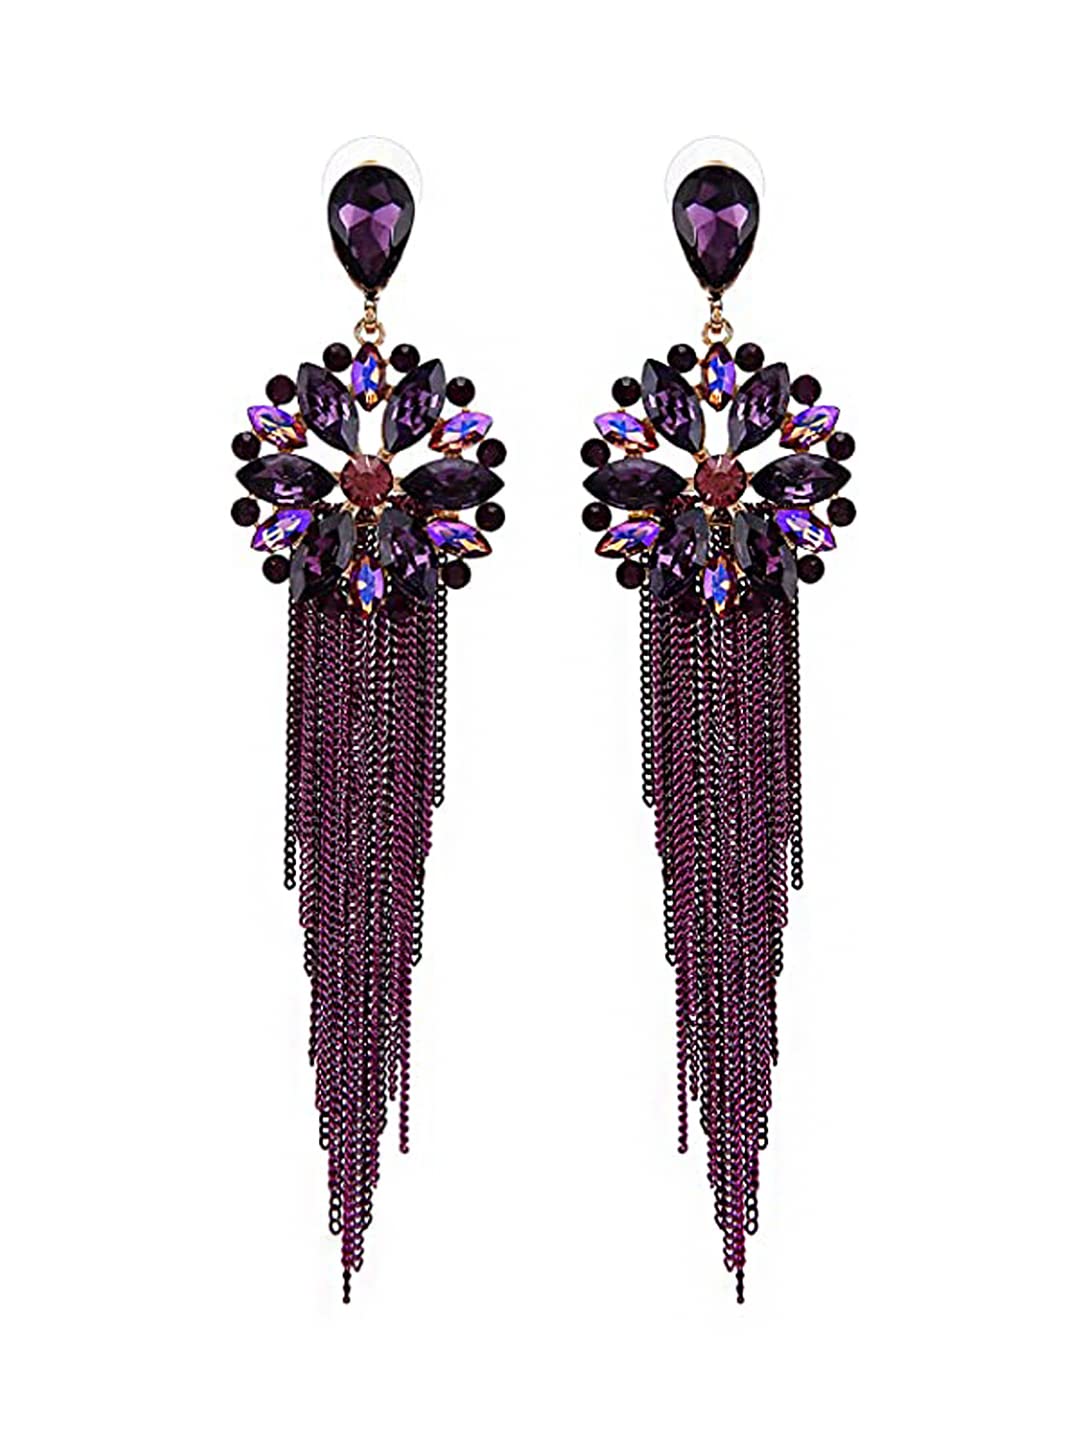 Yellow Chimes Danglers Earrings for Women Purple Crystal Earrings Long Chains Tassel Danglers Earrings for Women and Girls.